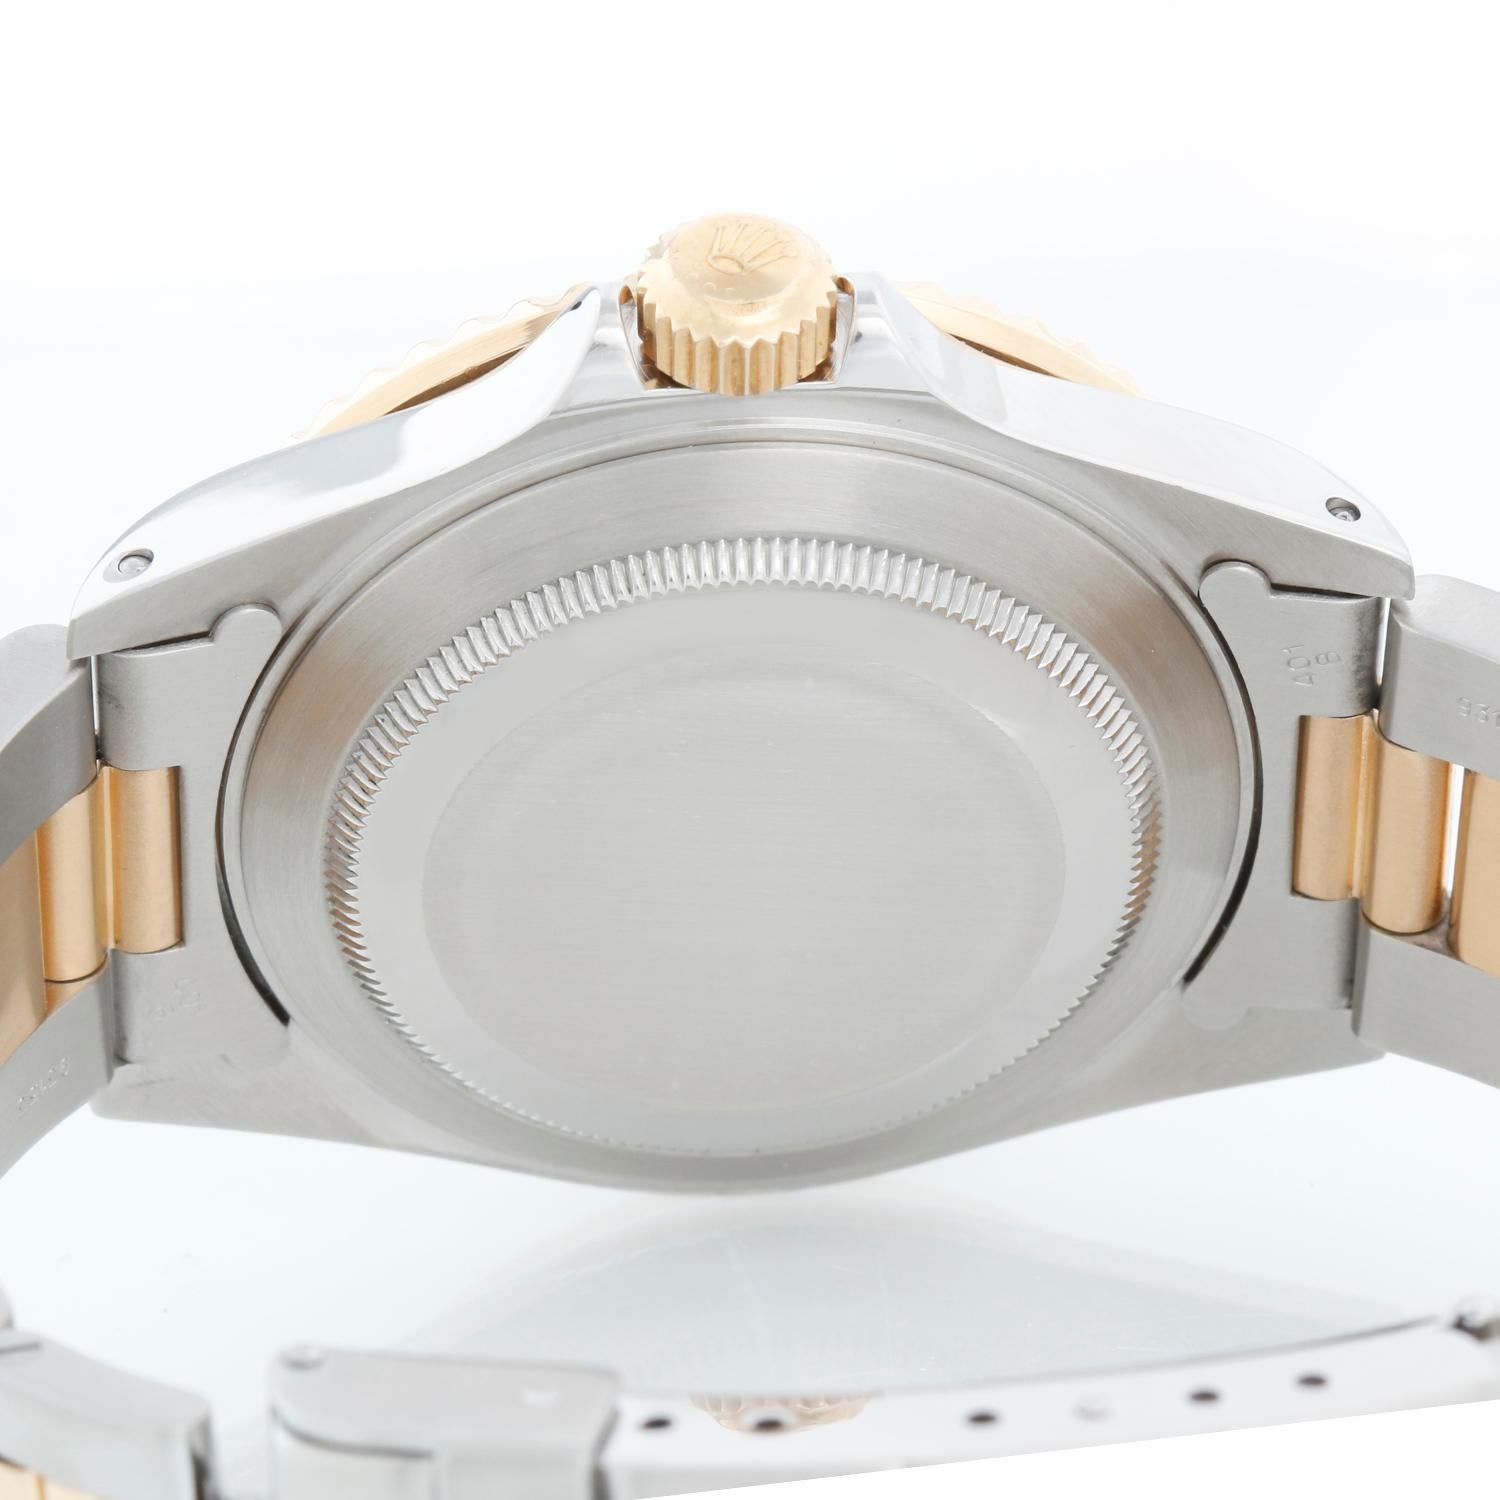 Rolex Submariner 2-Tone Steel & Gold Men's Watch 16613 3